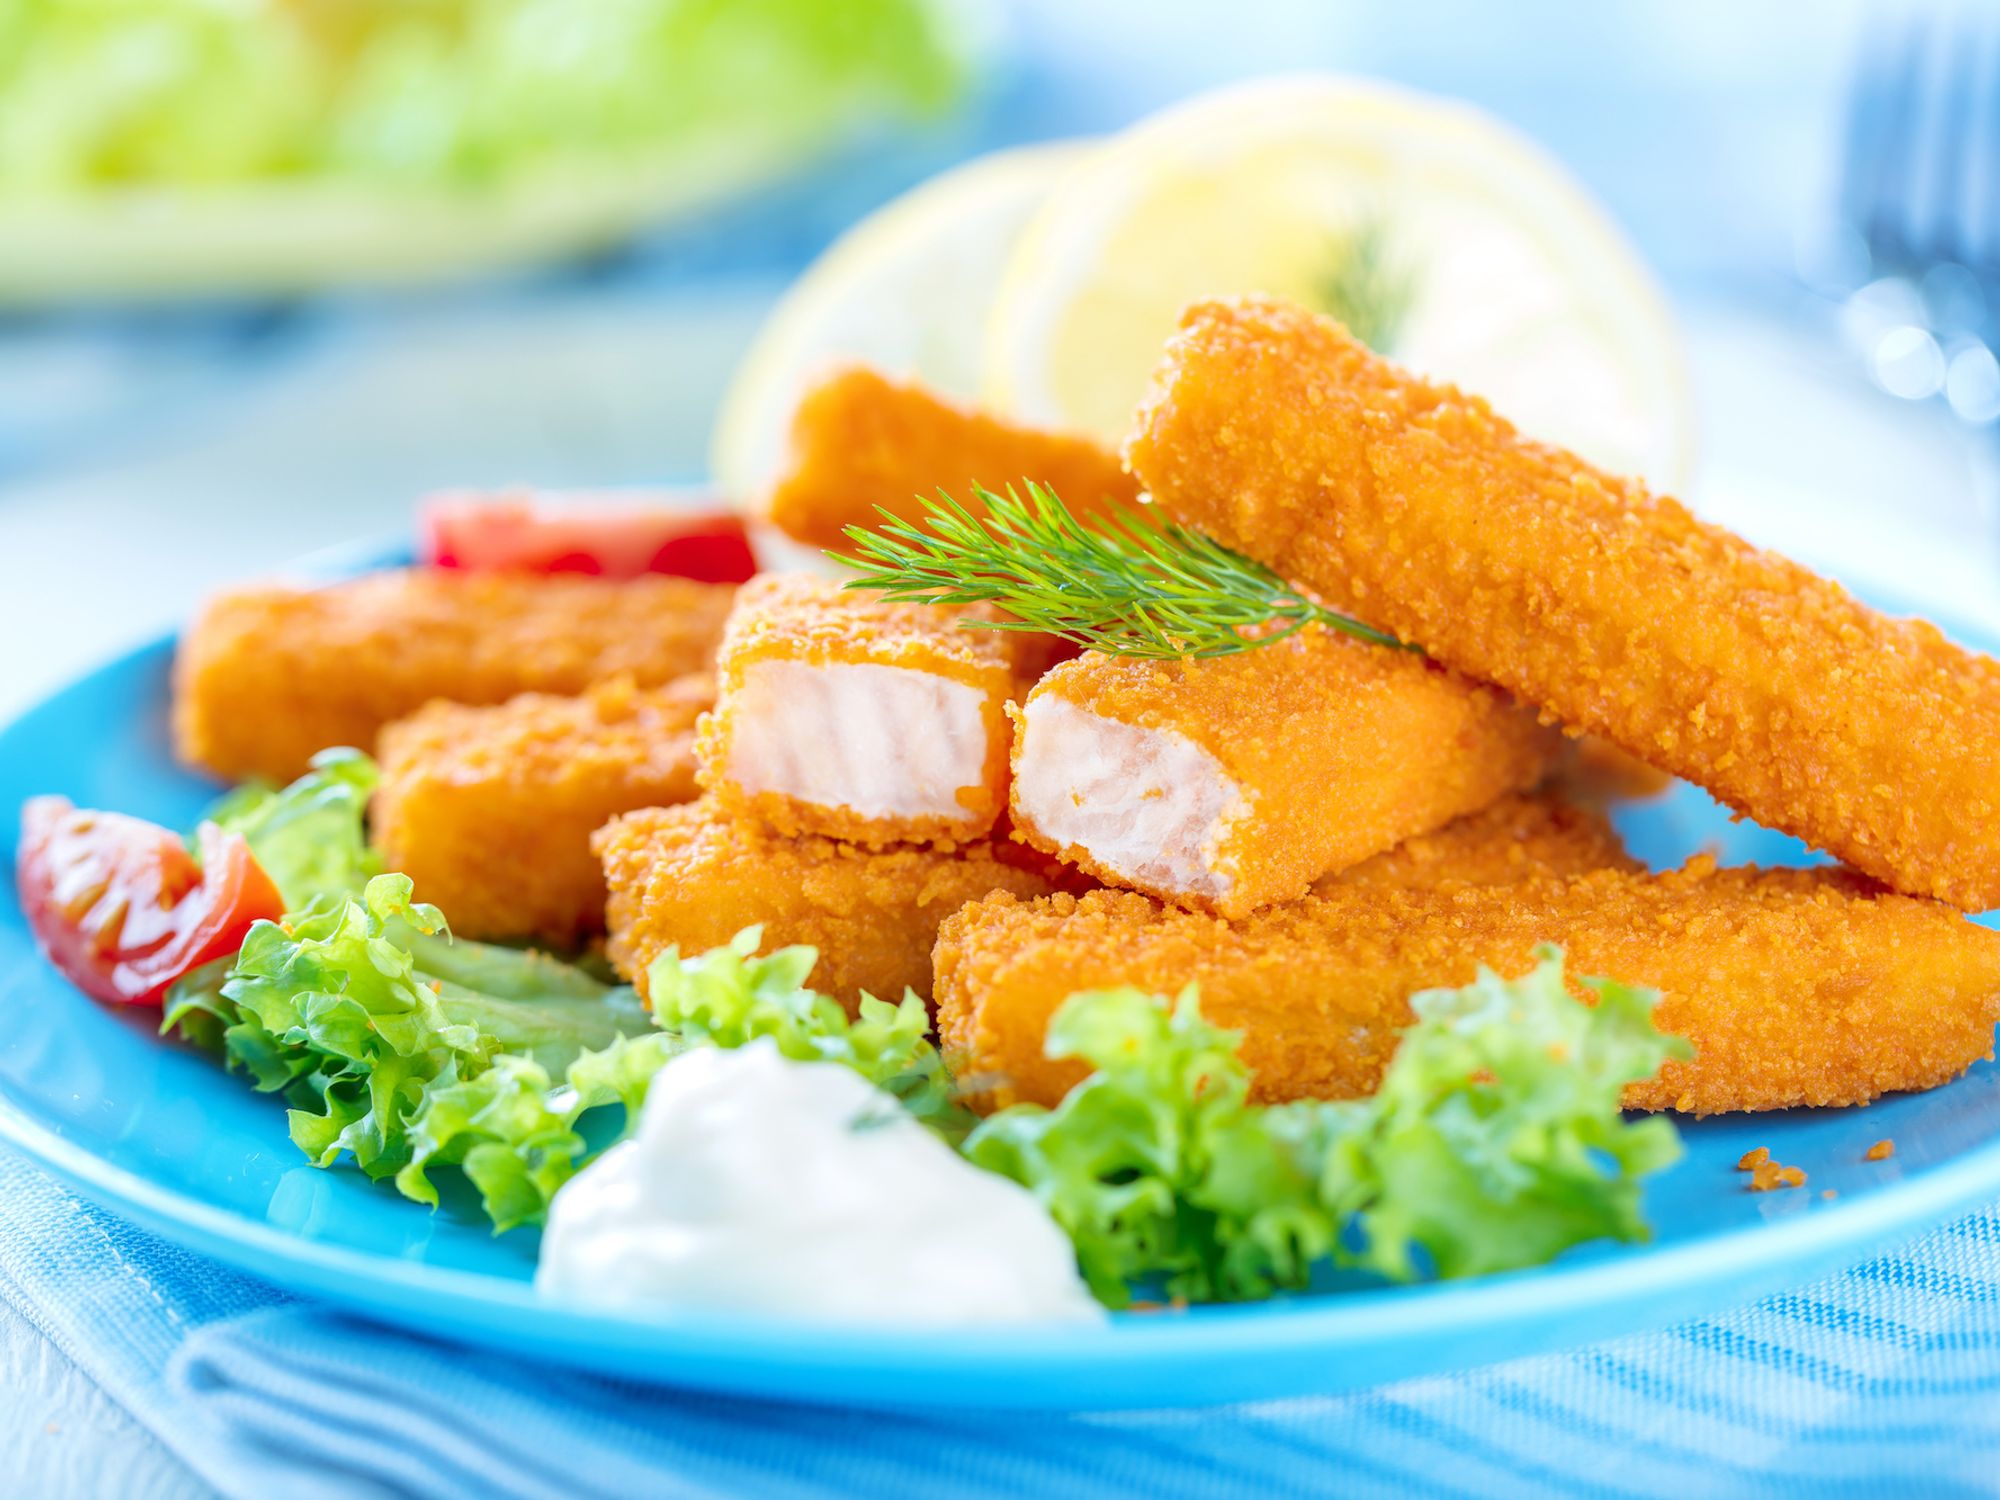 Les poissons panés, une bonne façon de manger plus de poisson?